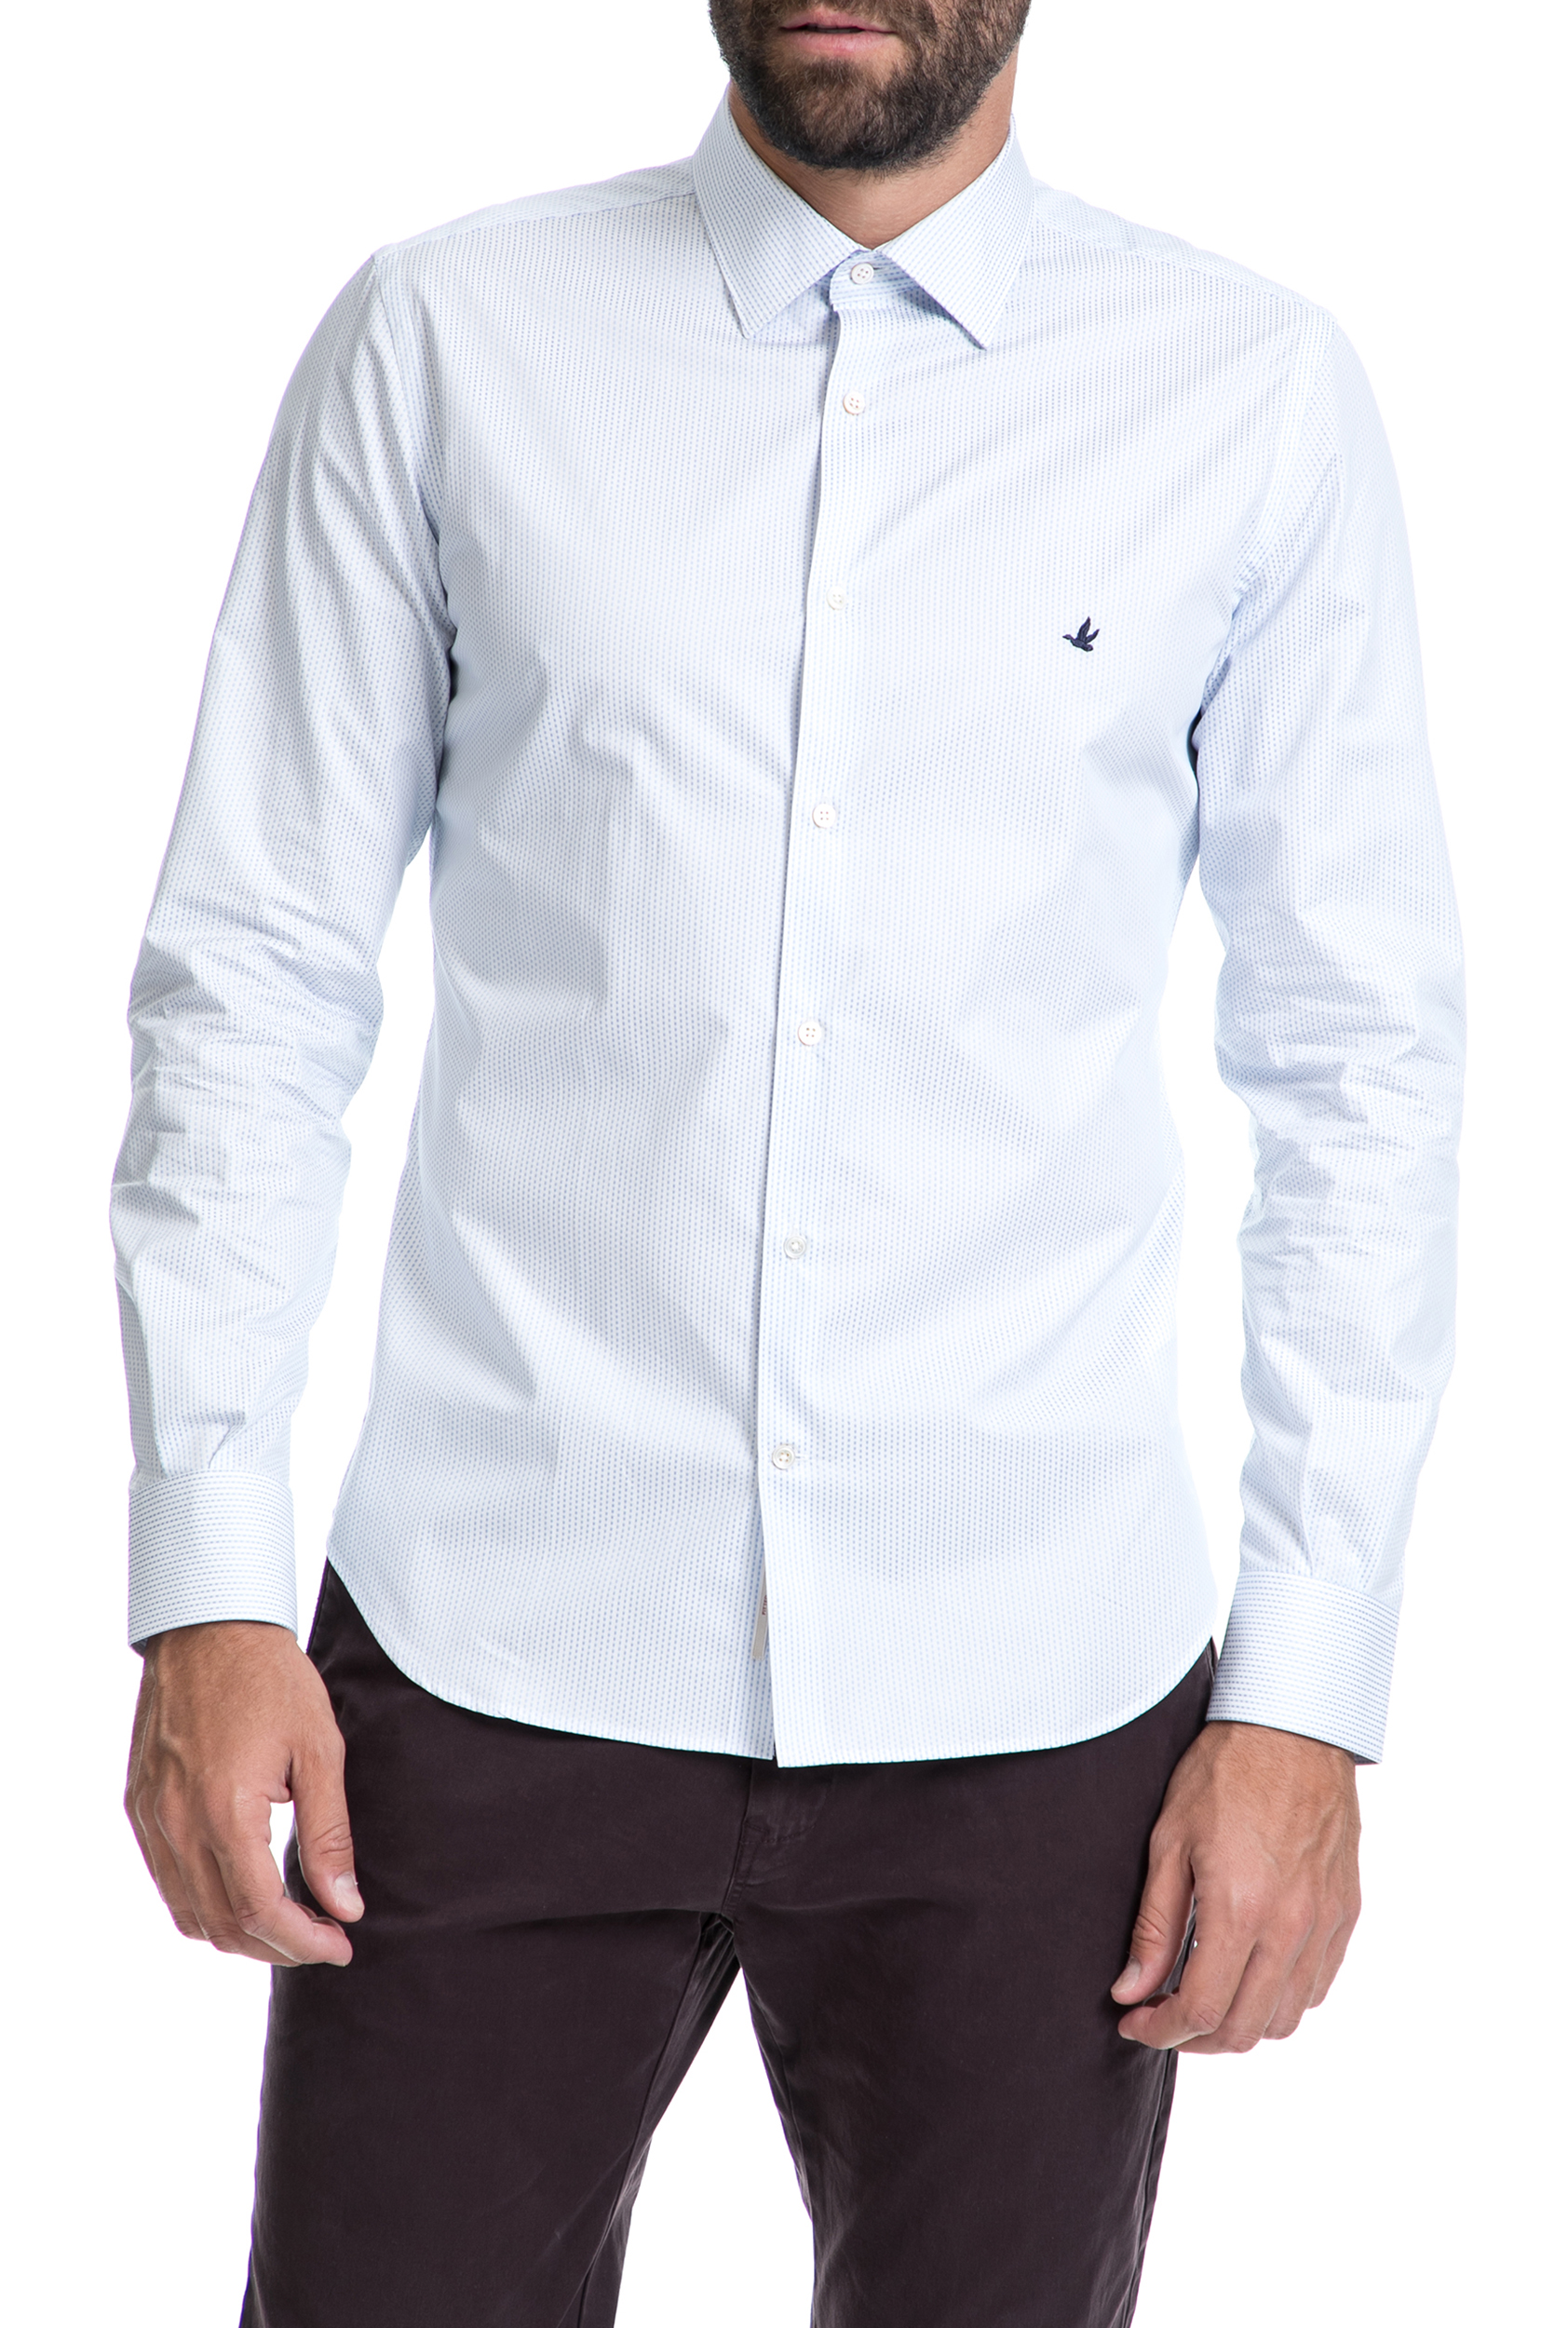 Ανδρικά/Ρούχα/Πουκάμισα/Μακρυμάνικα BROOKSFIELD - Αντρικό πουκάμισο BROOKSFIELD άσπρο-μπλε